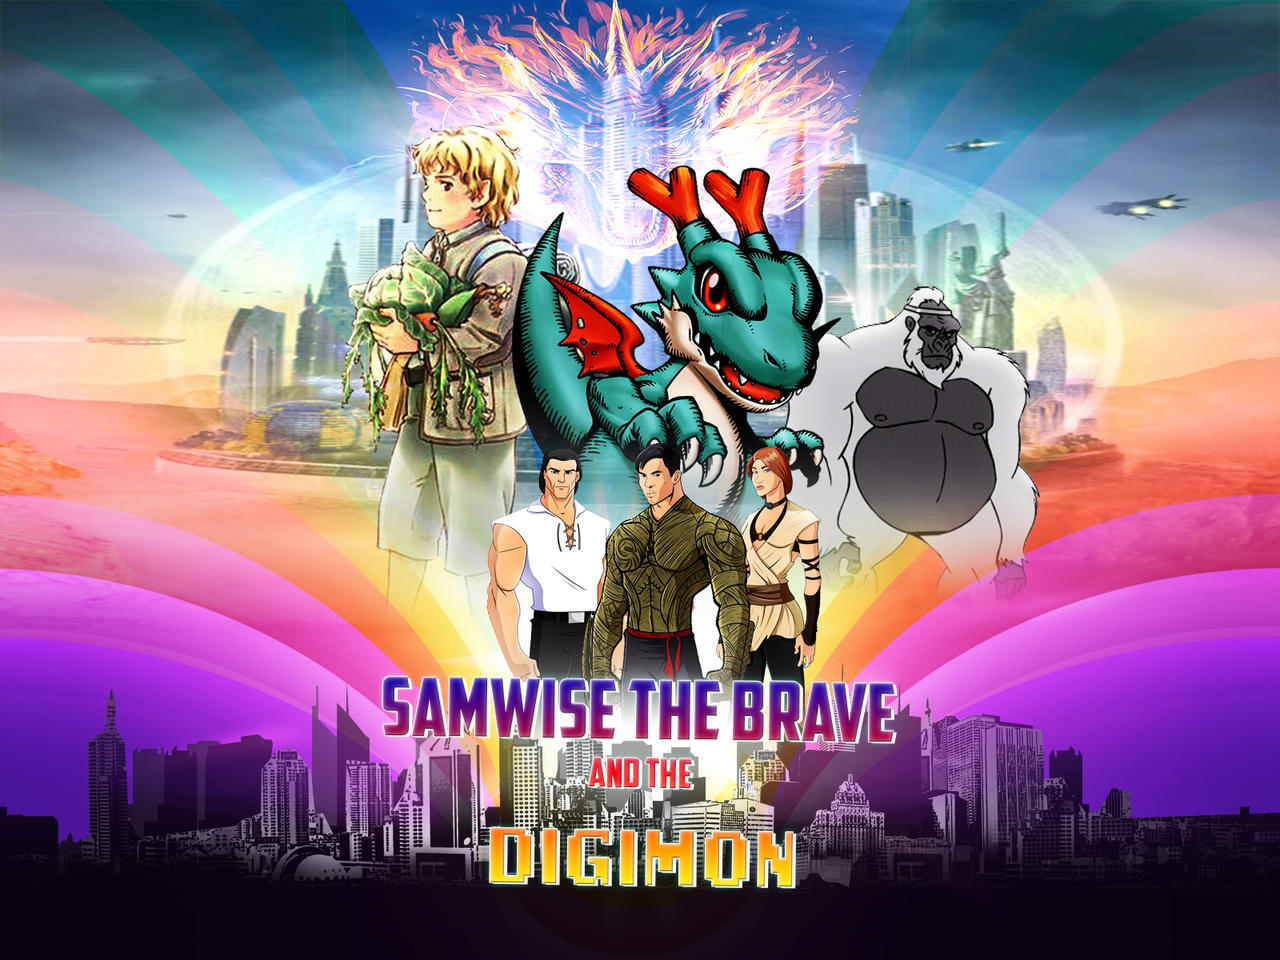 More character designs from “Digimon Adventure: Last Evolution Kizuna” : r/ digimon